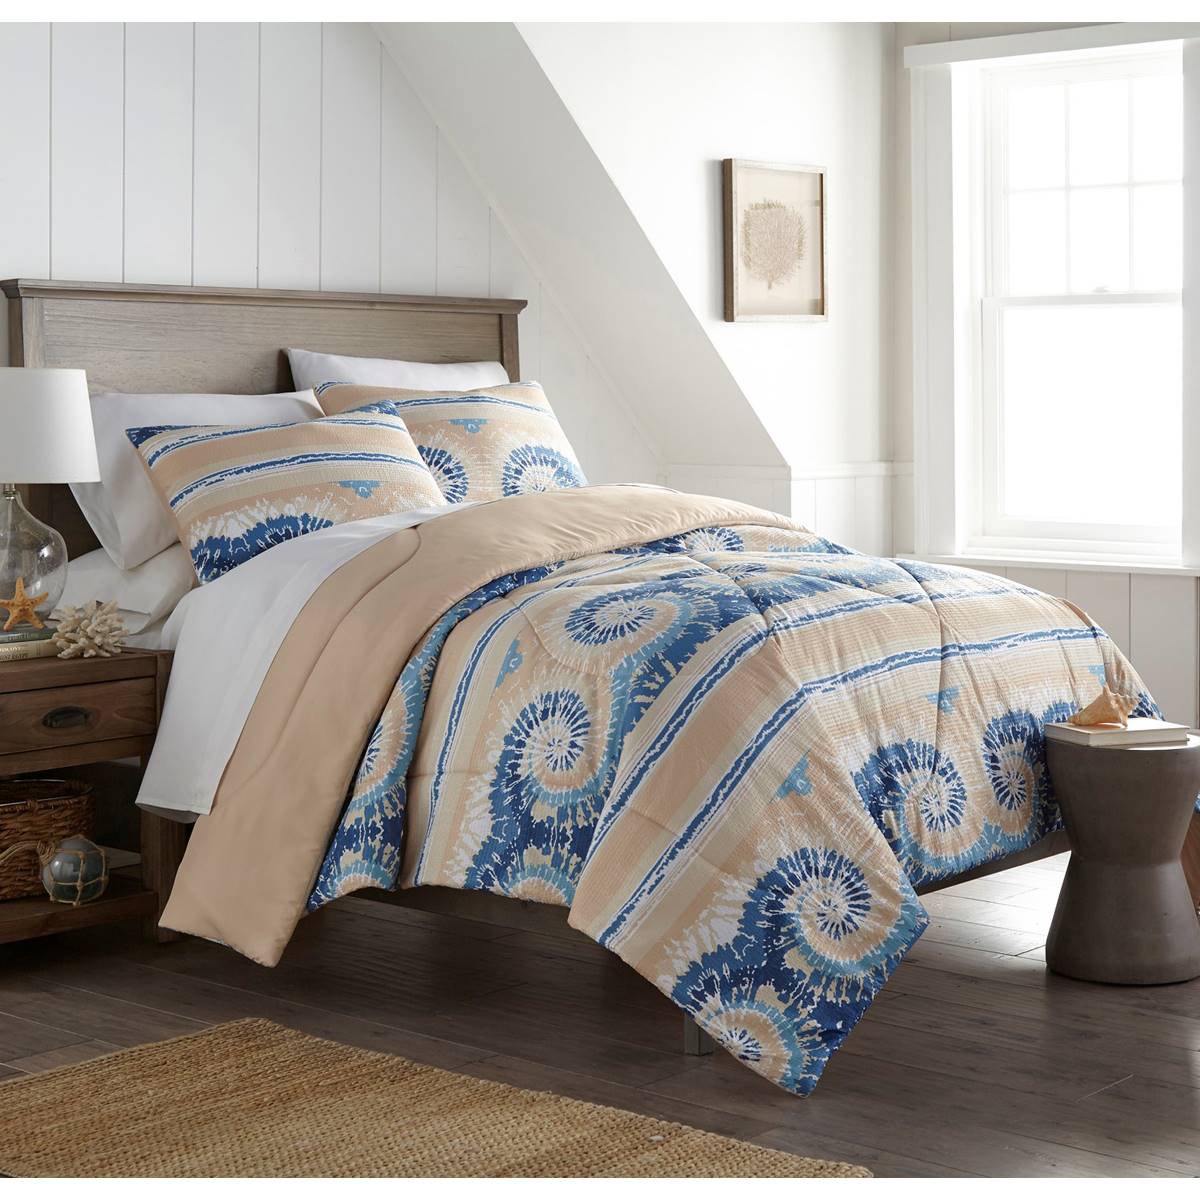 Shavel Home Products Seersucker Comforter Set - Tie Dye